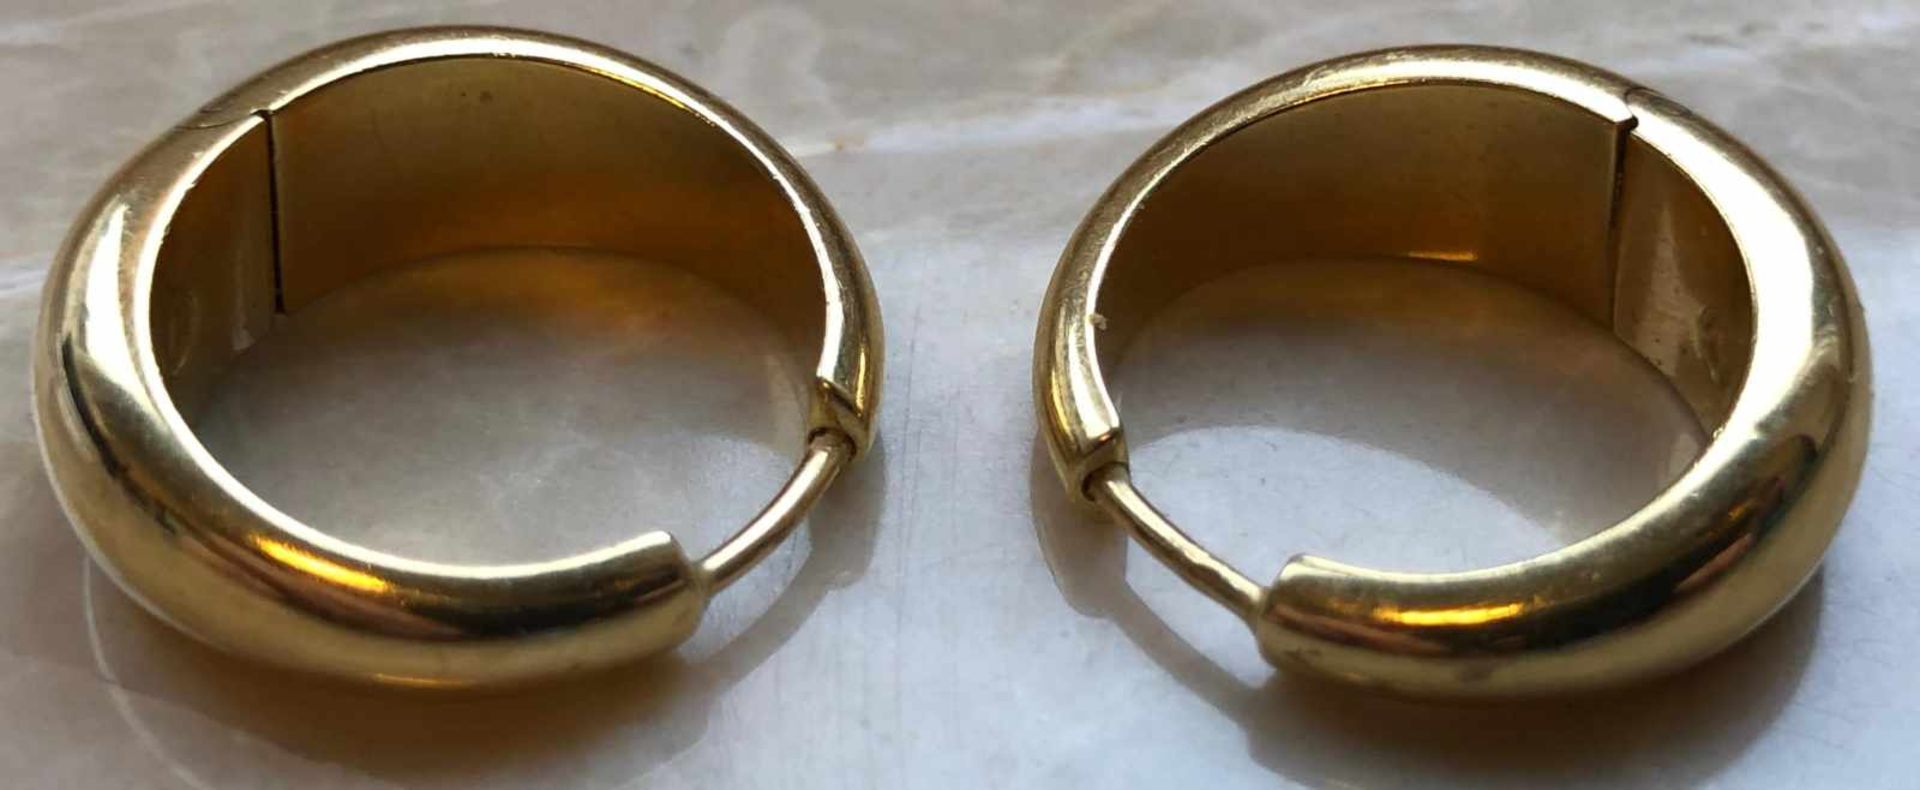 Paar Ohrringe Gold 750. Handarbeit. Marken.9,5 Gramm. 22 mm Durchmesser.Pair of earrings 750 gold. - Bild 4 aus 6